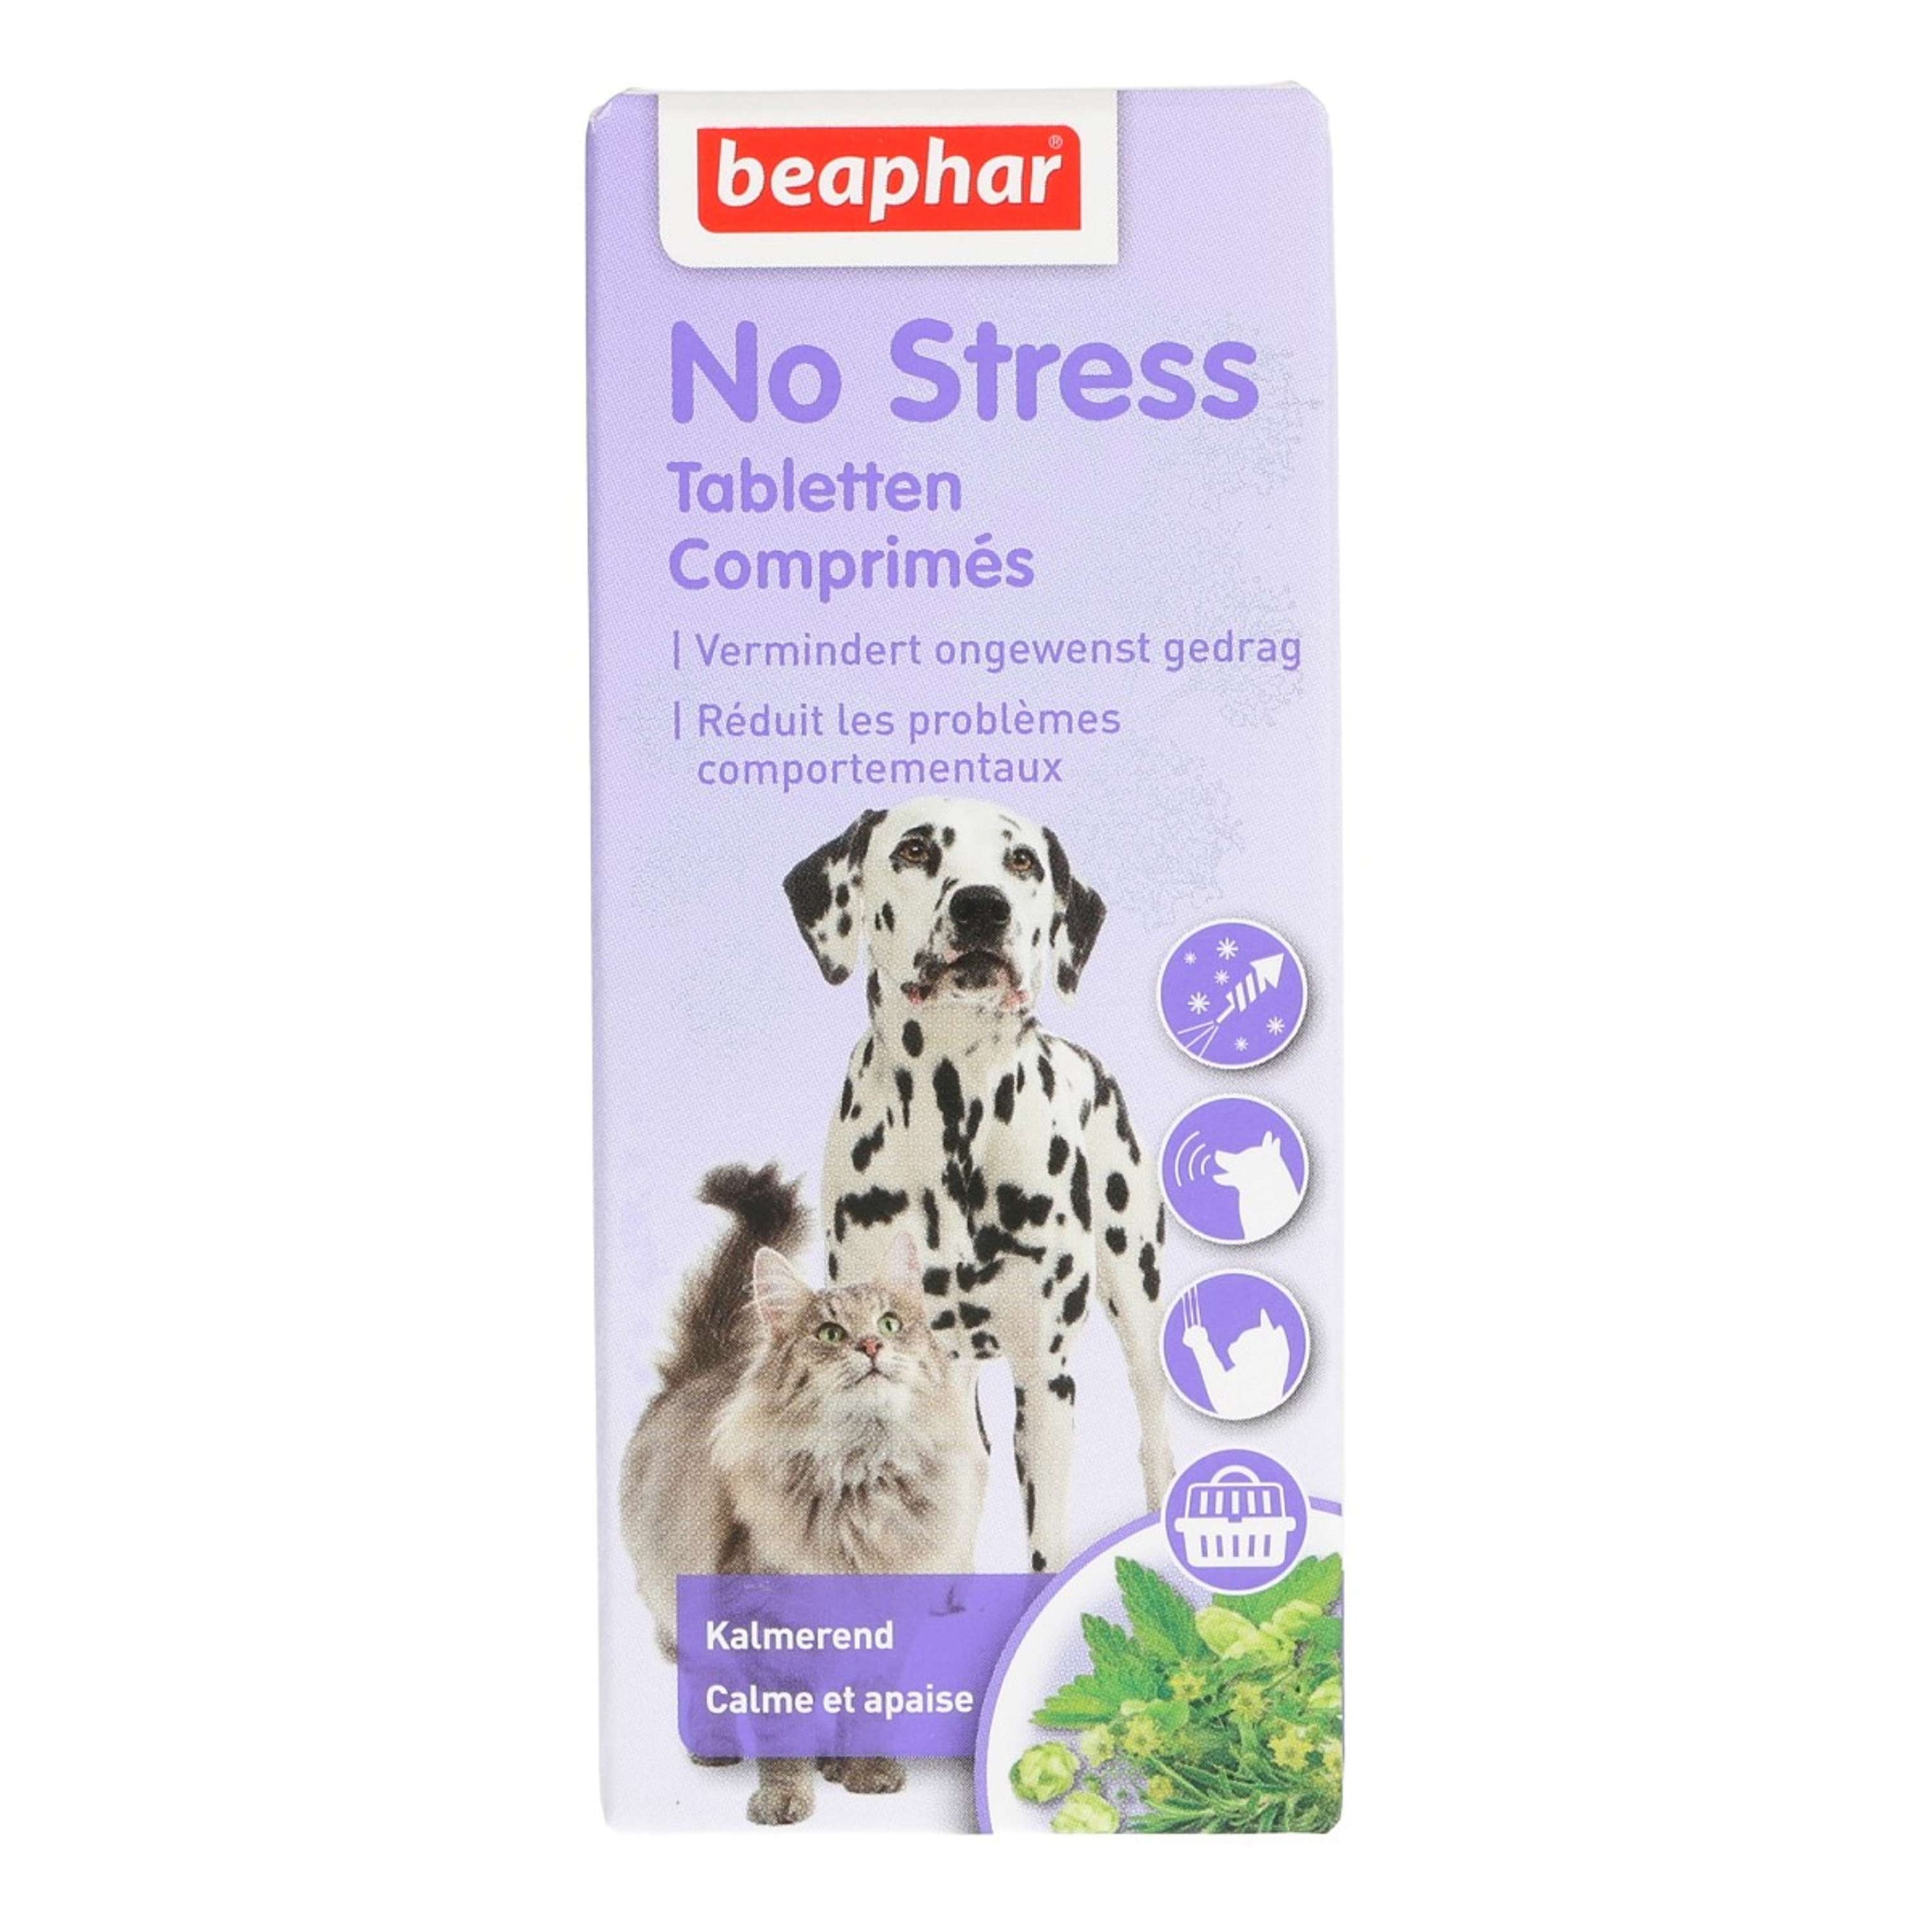 Beaphar Comprimés pour les Nerfs No Stress